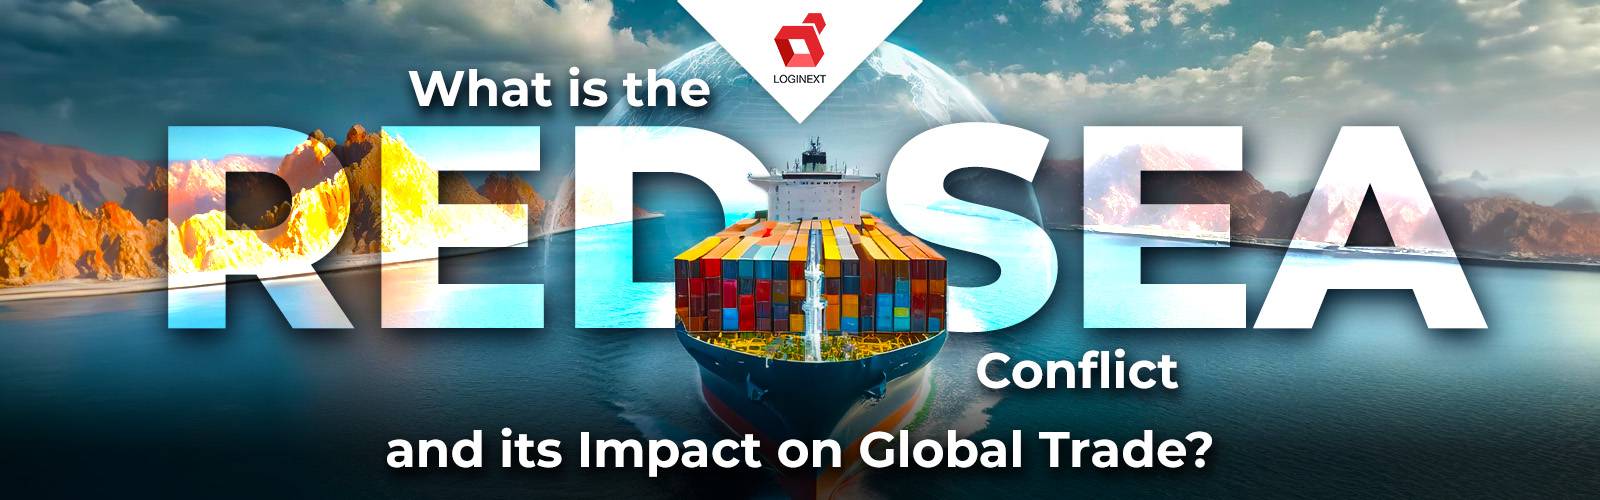 Was ist der Konflikt im Roten Meer und welche Auswirkungen hat er auf den Welthandel?